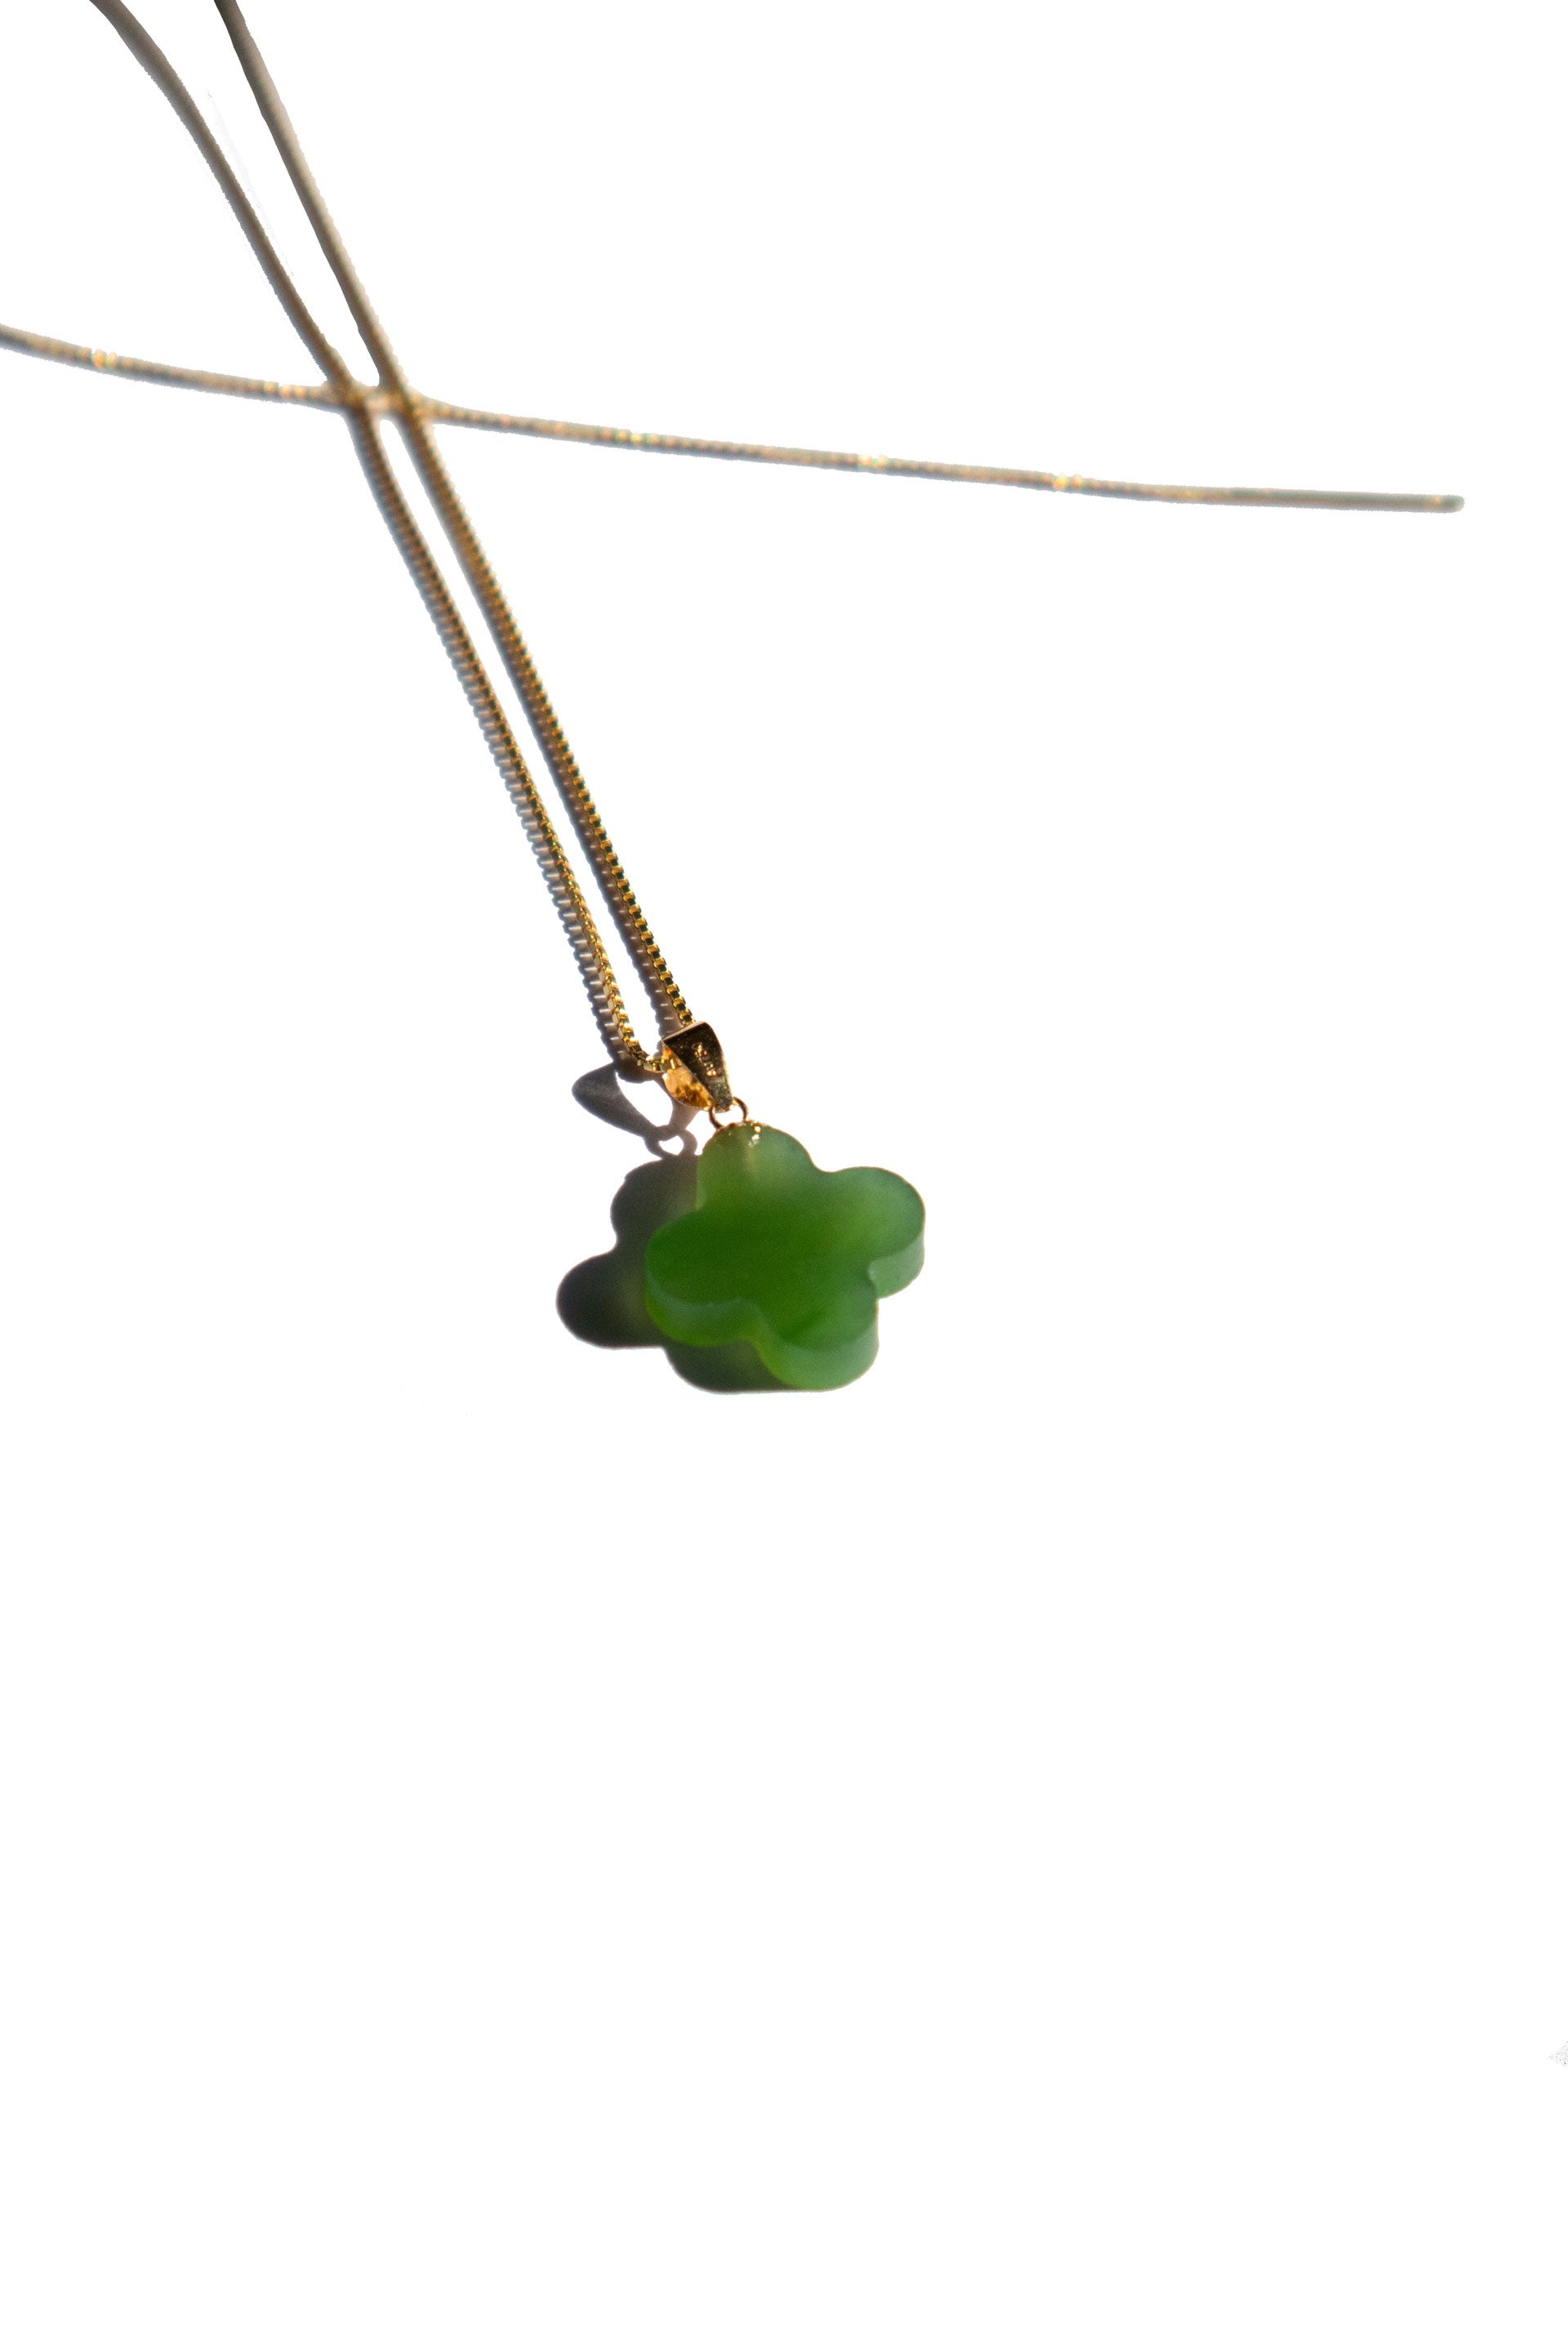 Four Leaf Clover Natural Green Jade Crystal Gold Bracelet